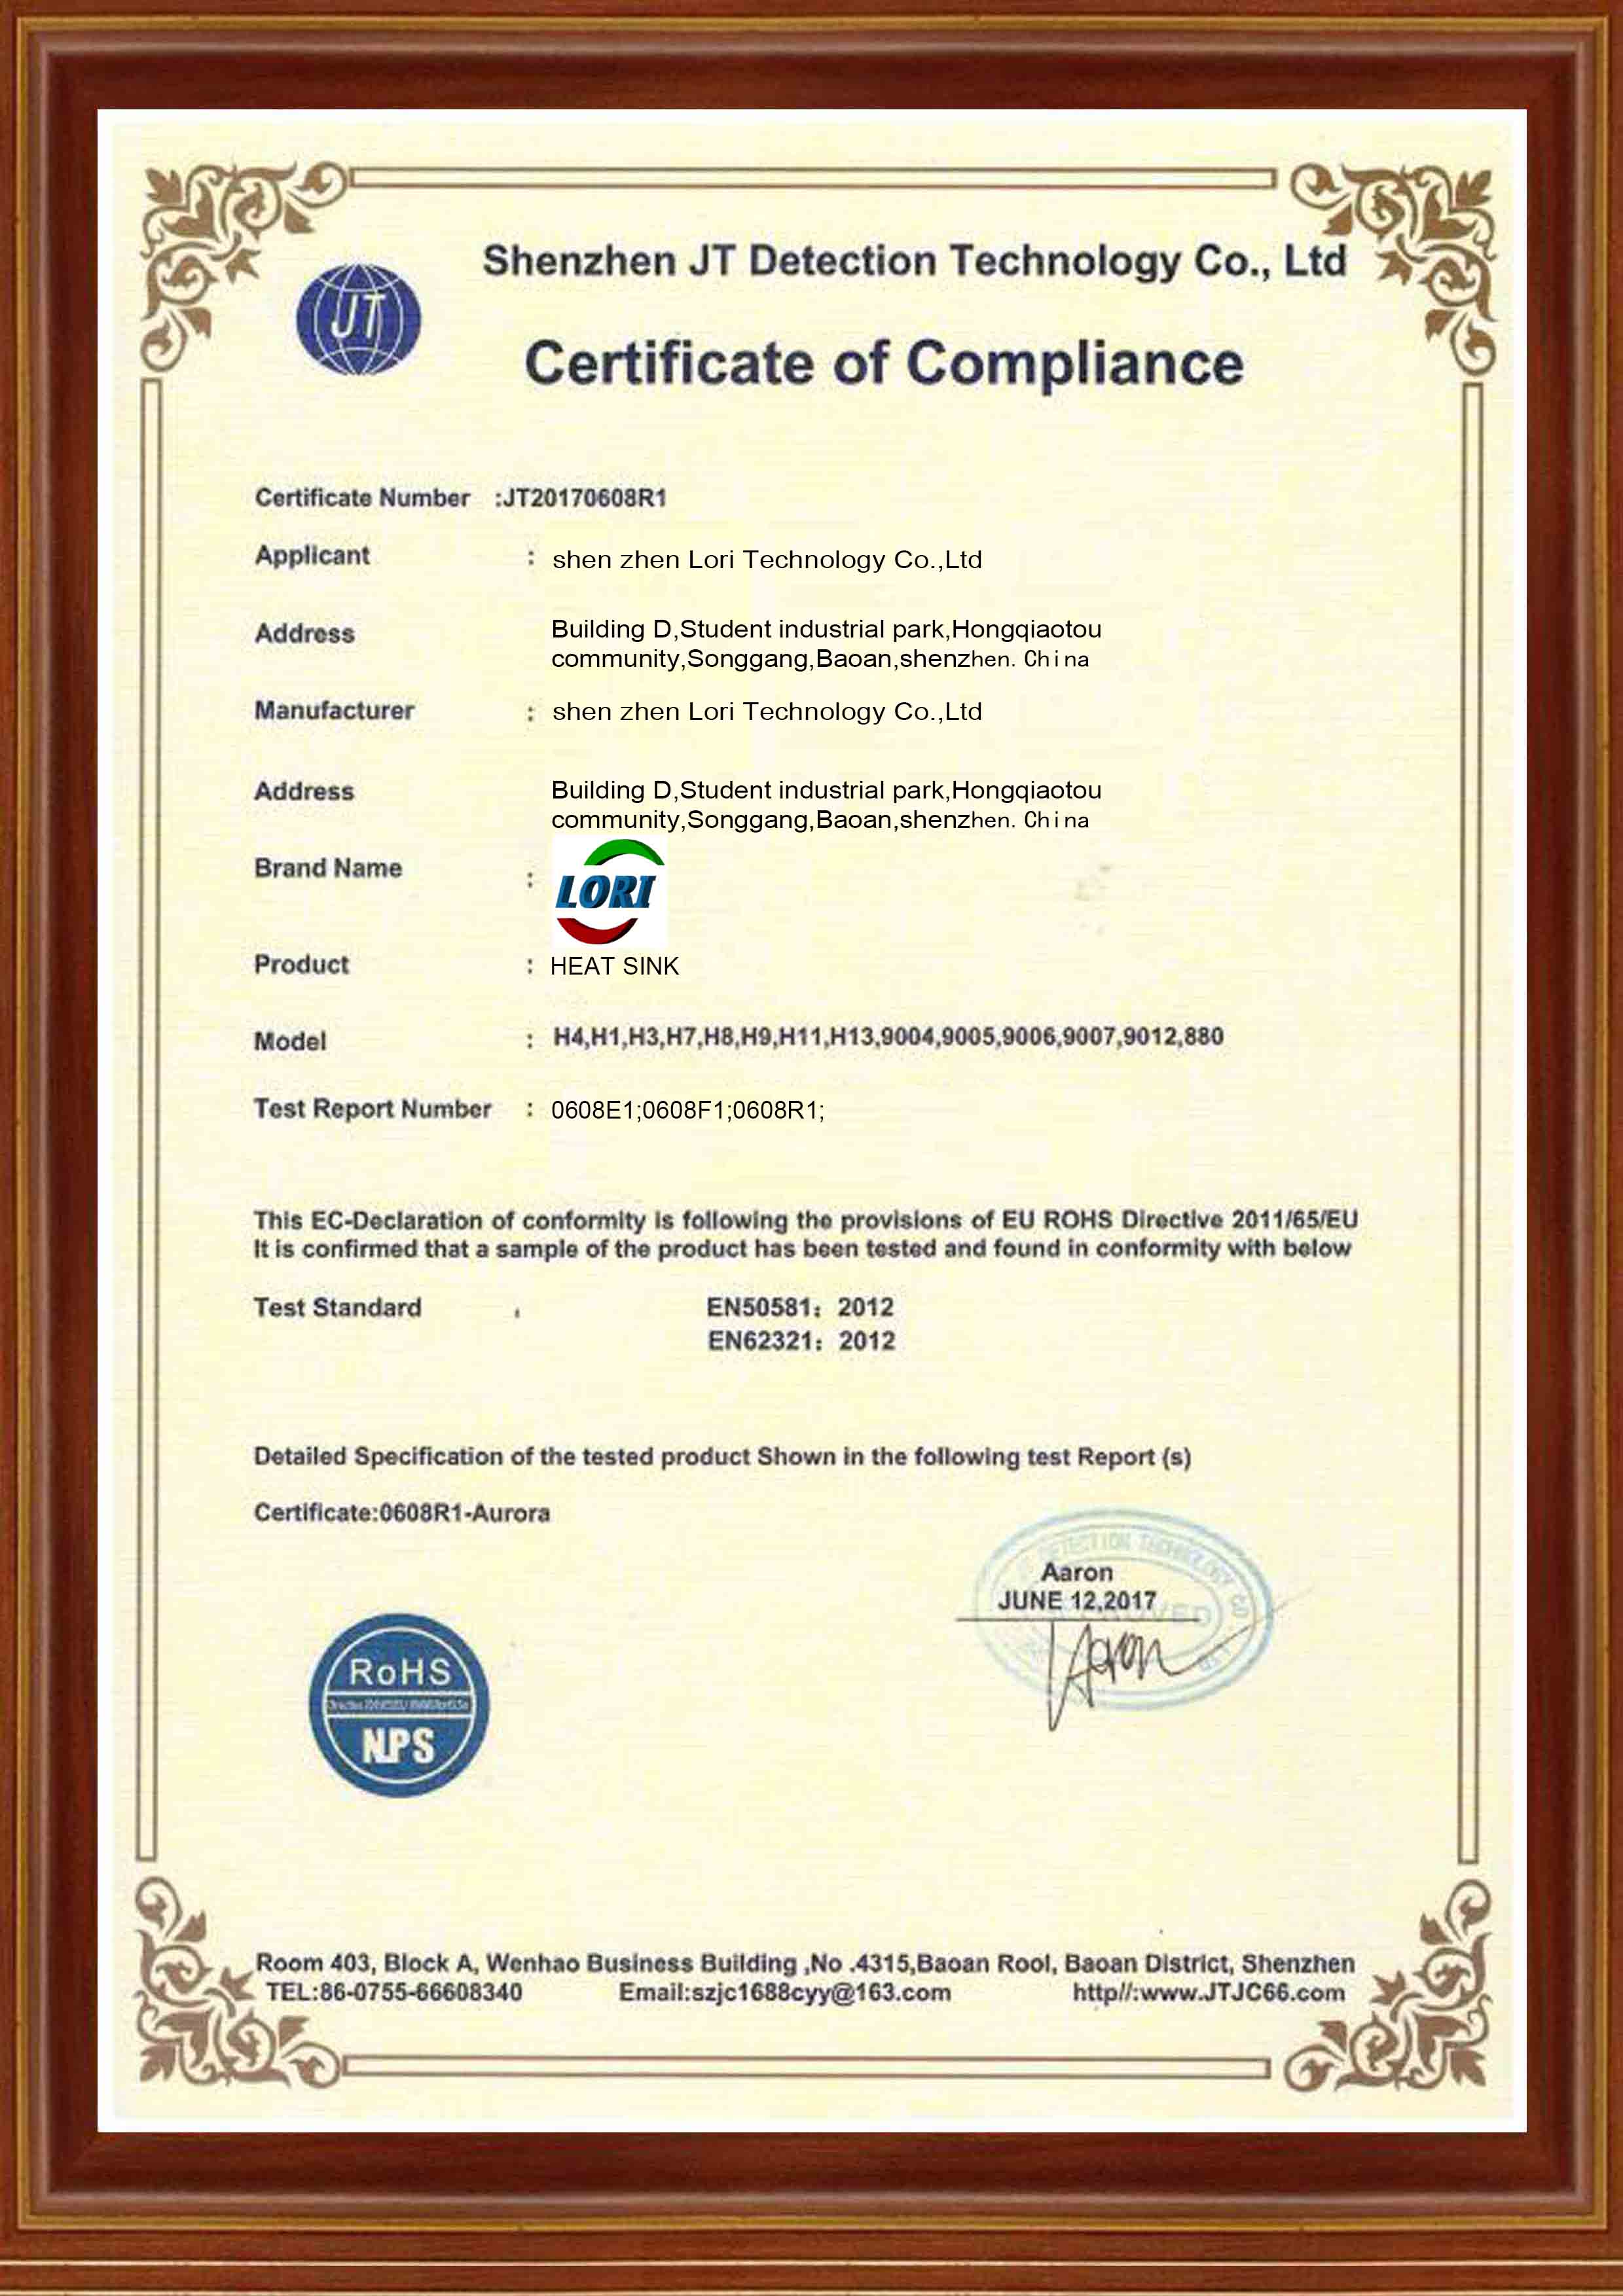 ROHS Certificate 